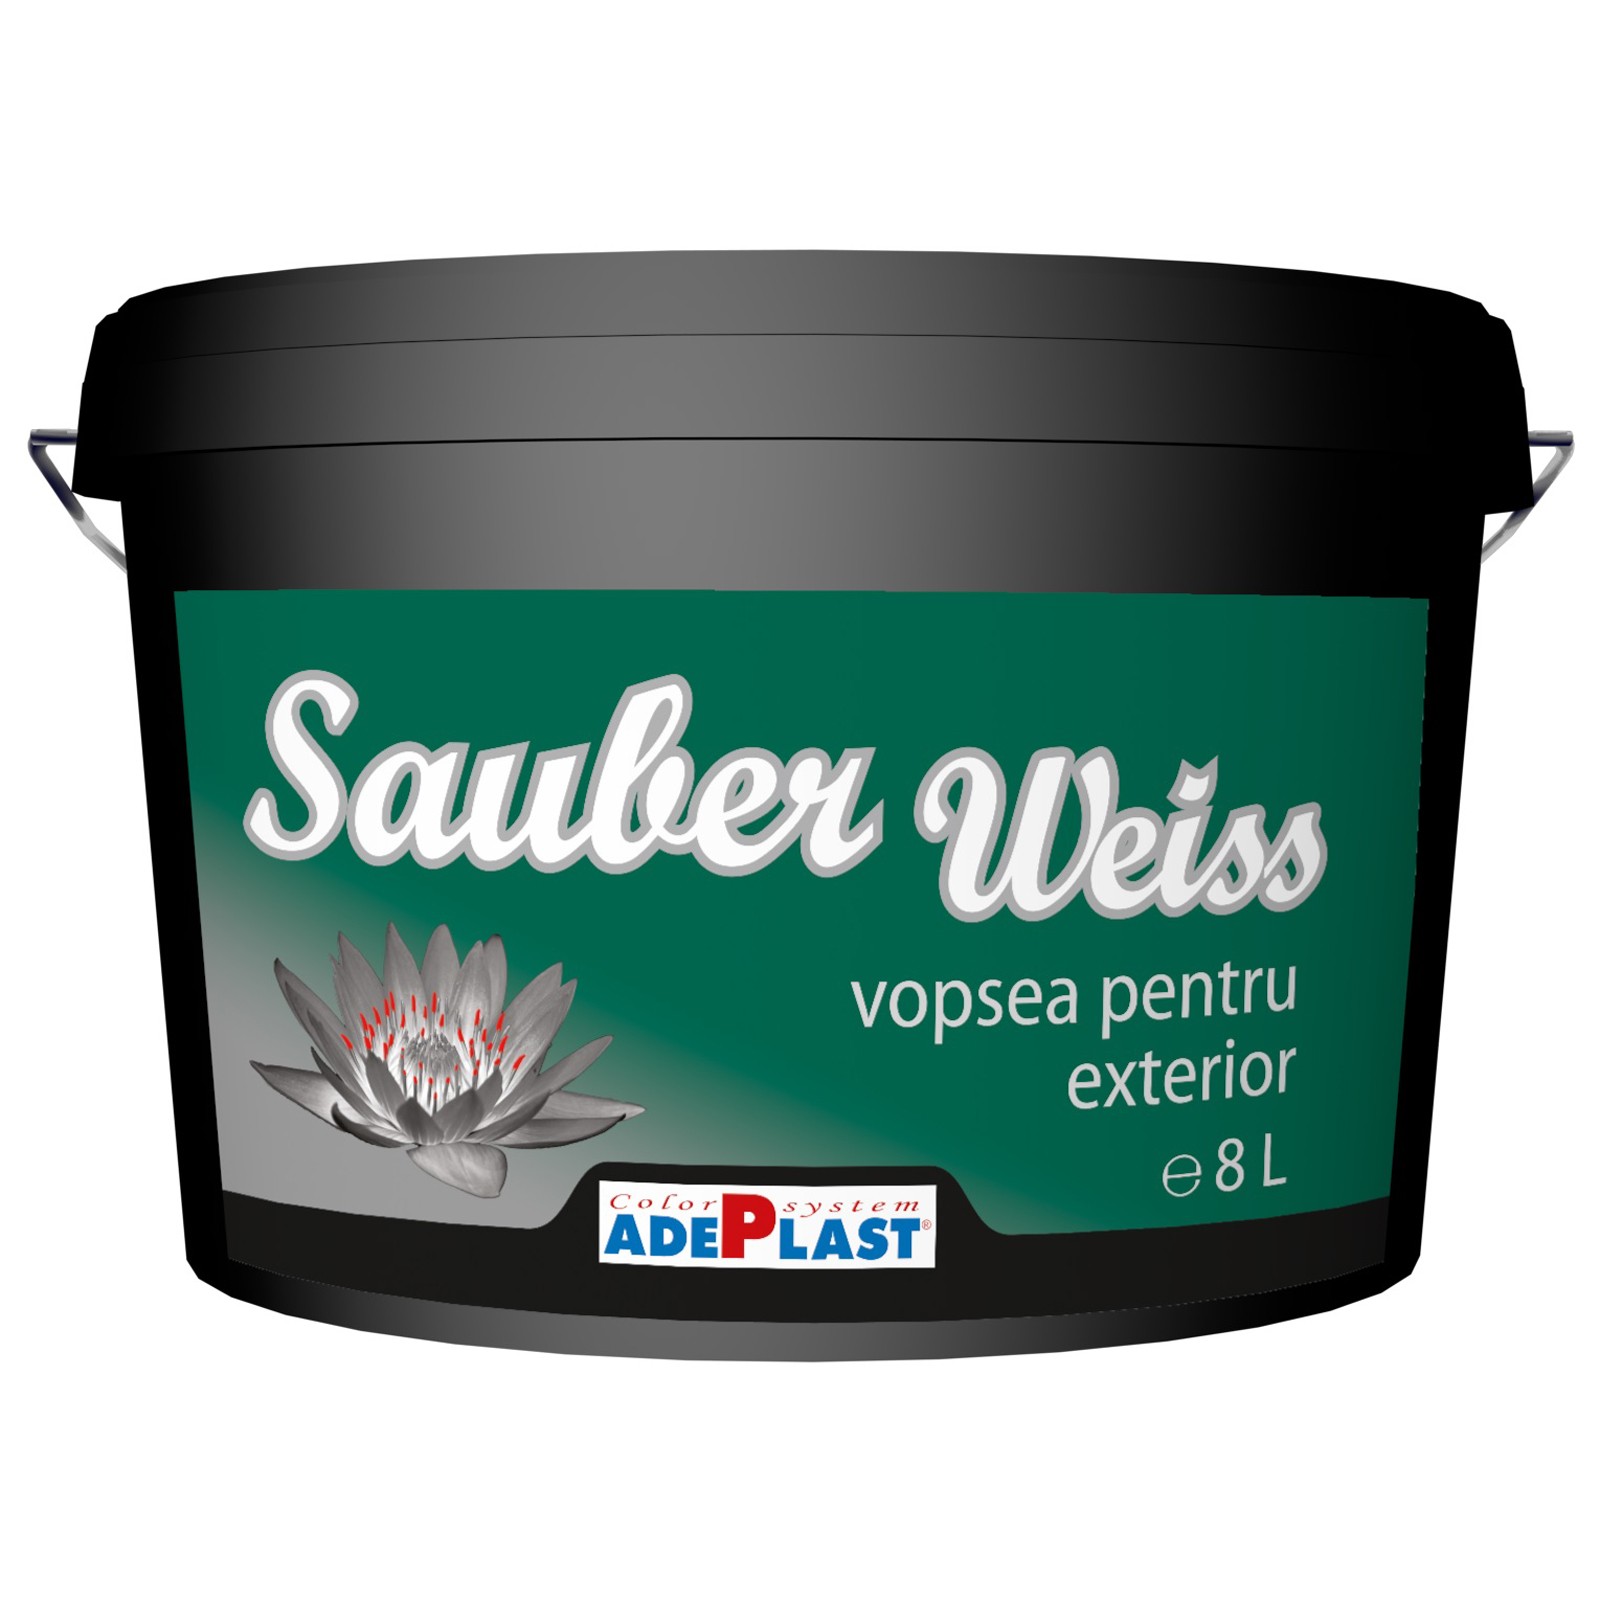 Vopseluri - Vopsea lavabila pentru exterior Adeplast Sauber Weiss alba 15L, maxbau.ro